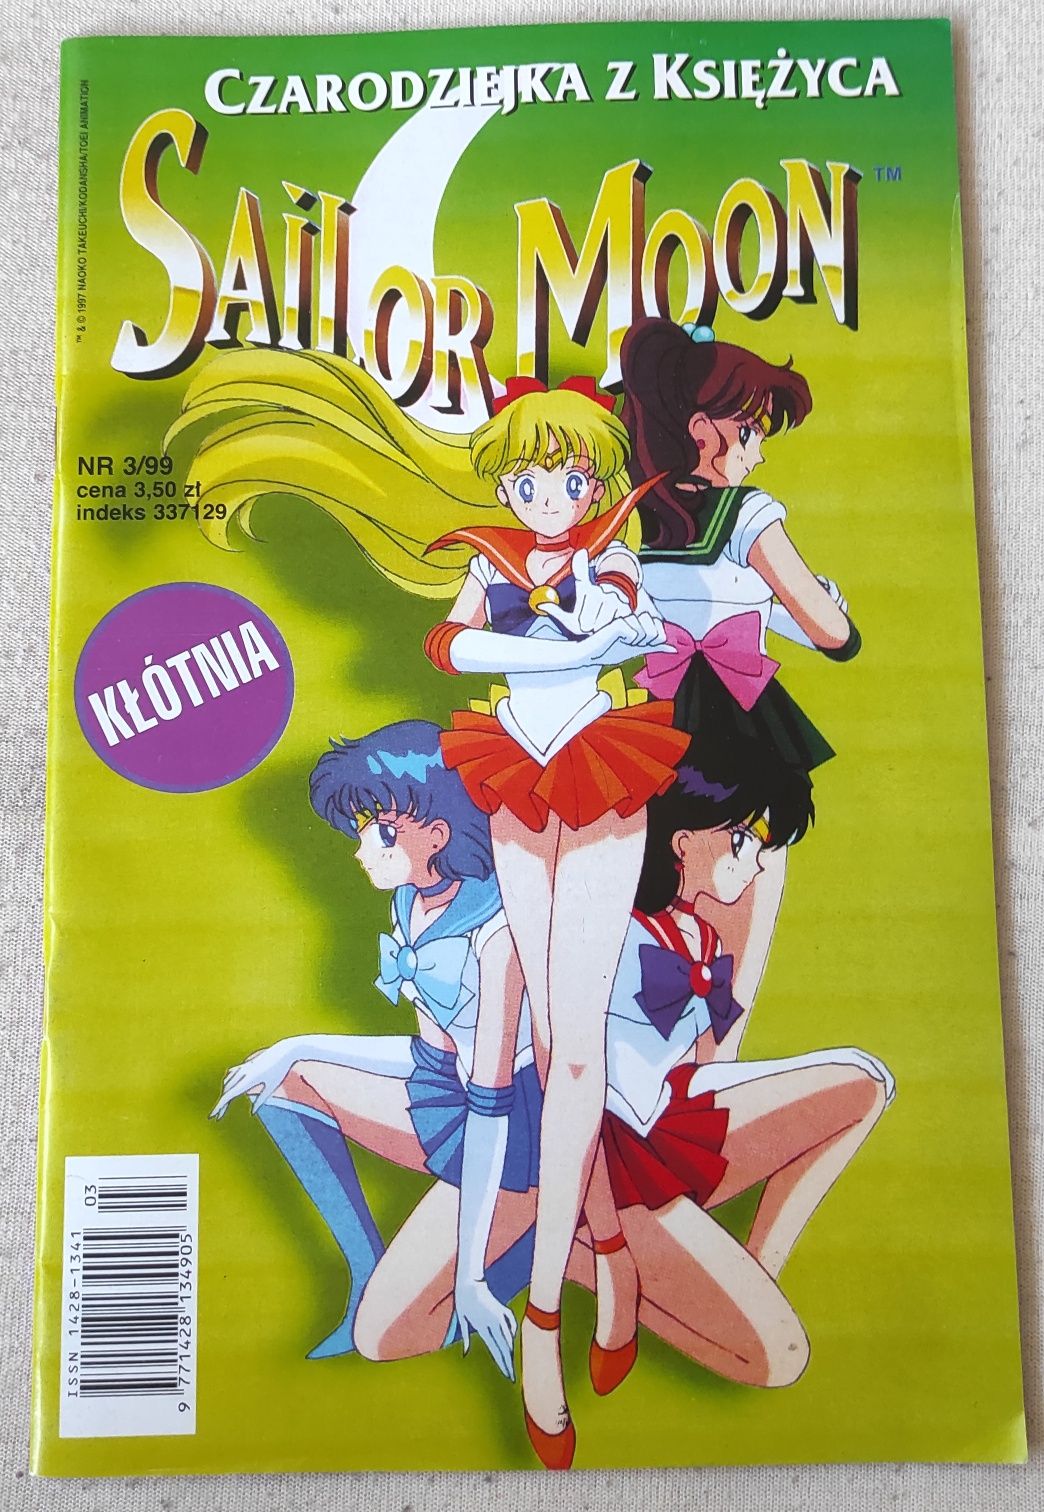 Komiks Czarodziejka z księżyca nr. 3/99 Sailor Moon Manga Anime